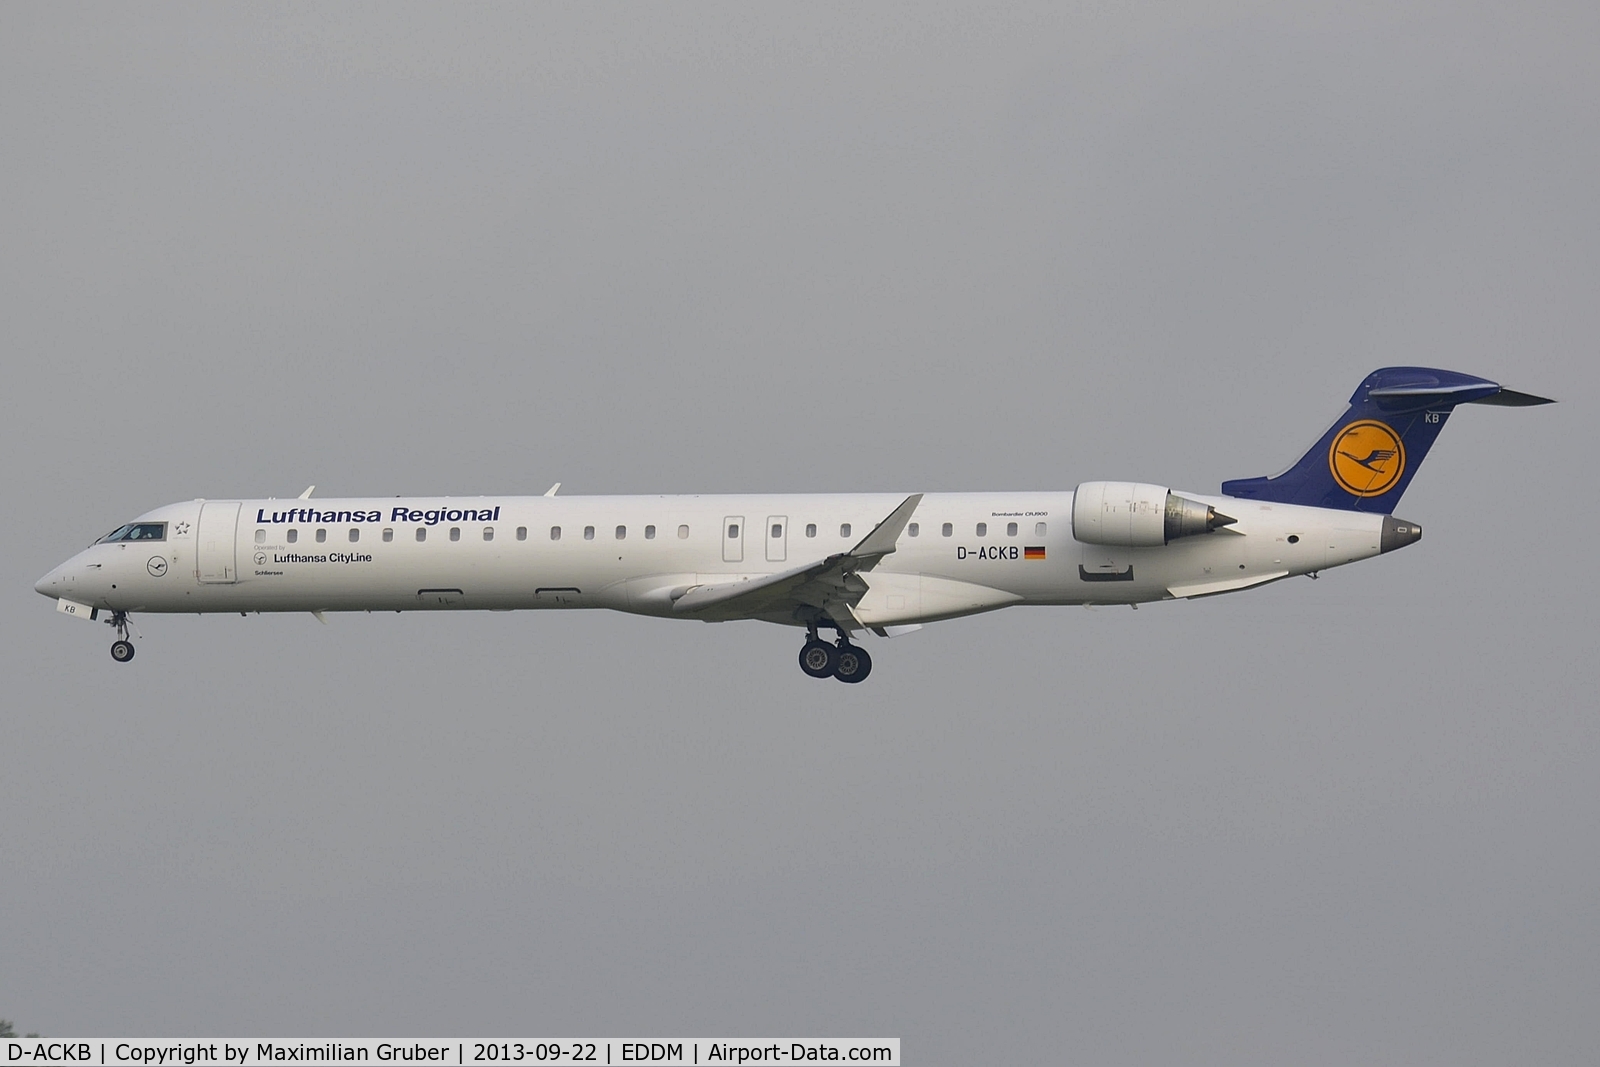 D-ACKB, 2006 Bombardier CRJ-900LR (CL-600-2D24) C/N 15073, Lufthansa Cityline